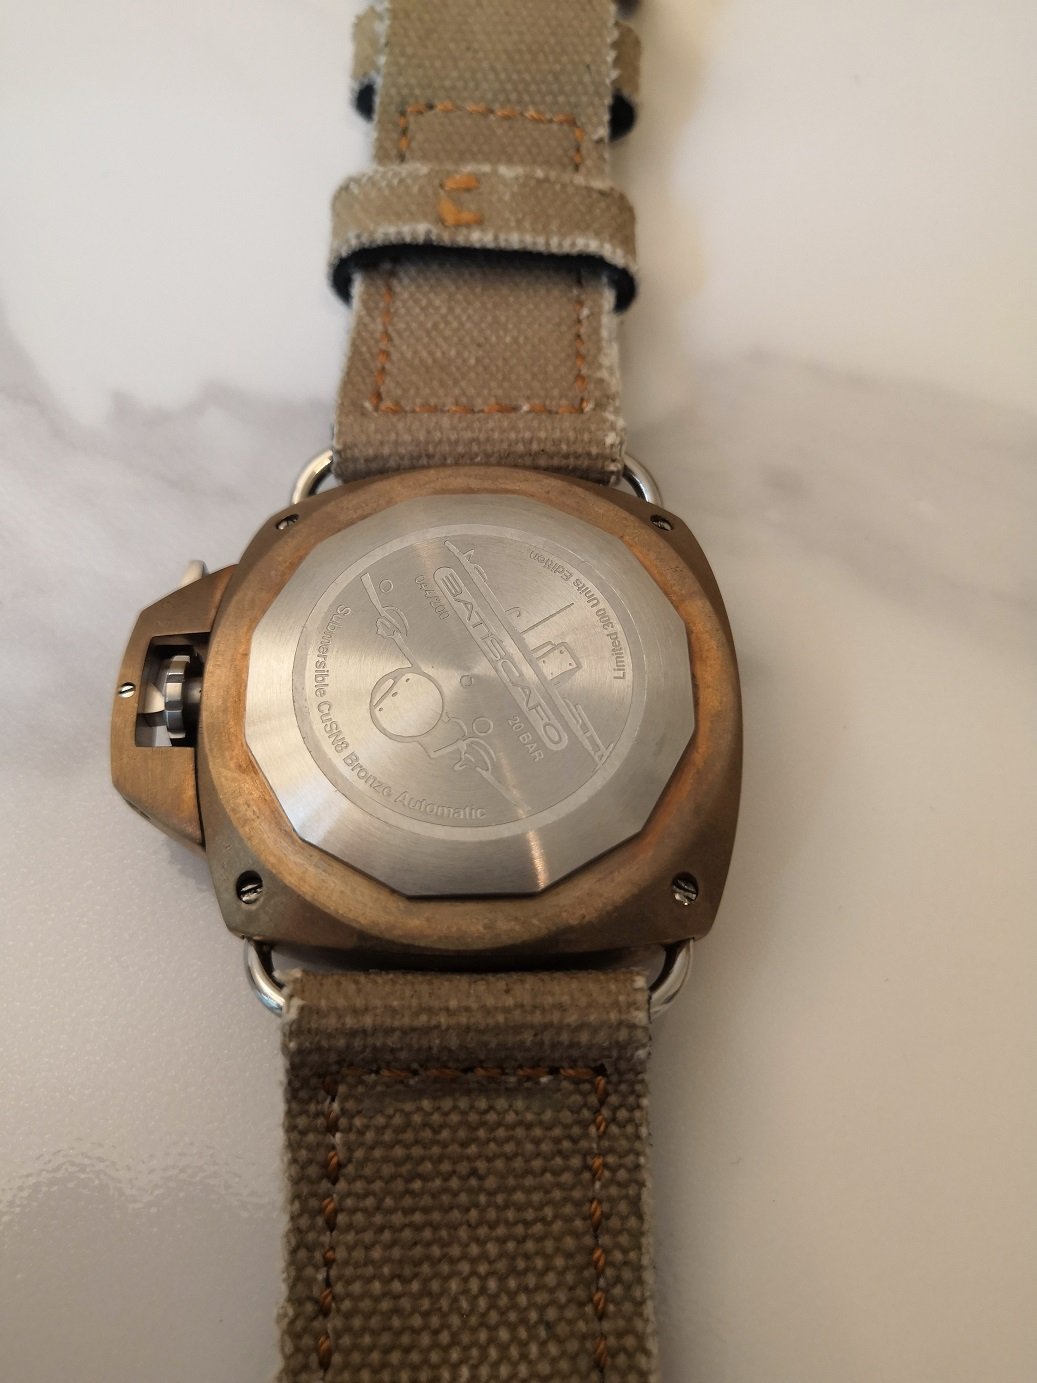 Batiscafo bronze dive watch